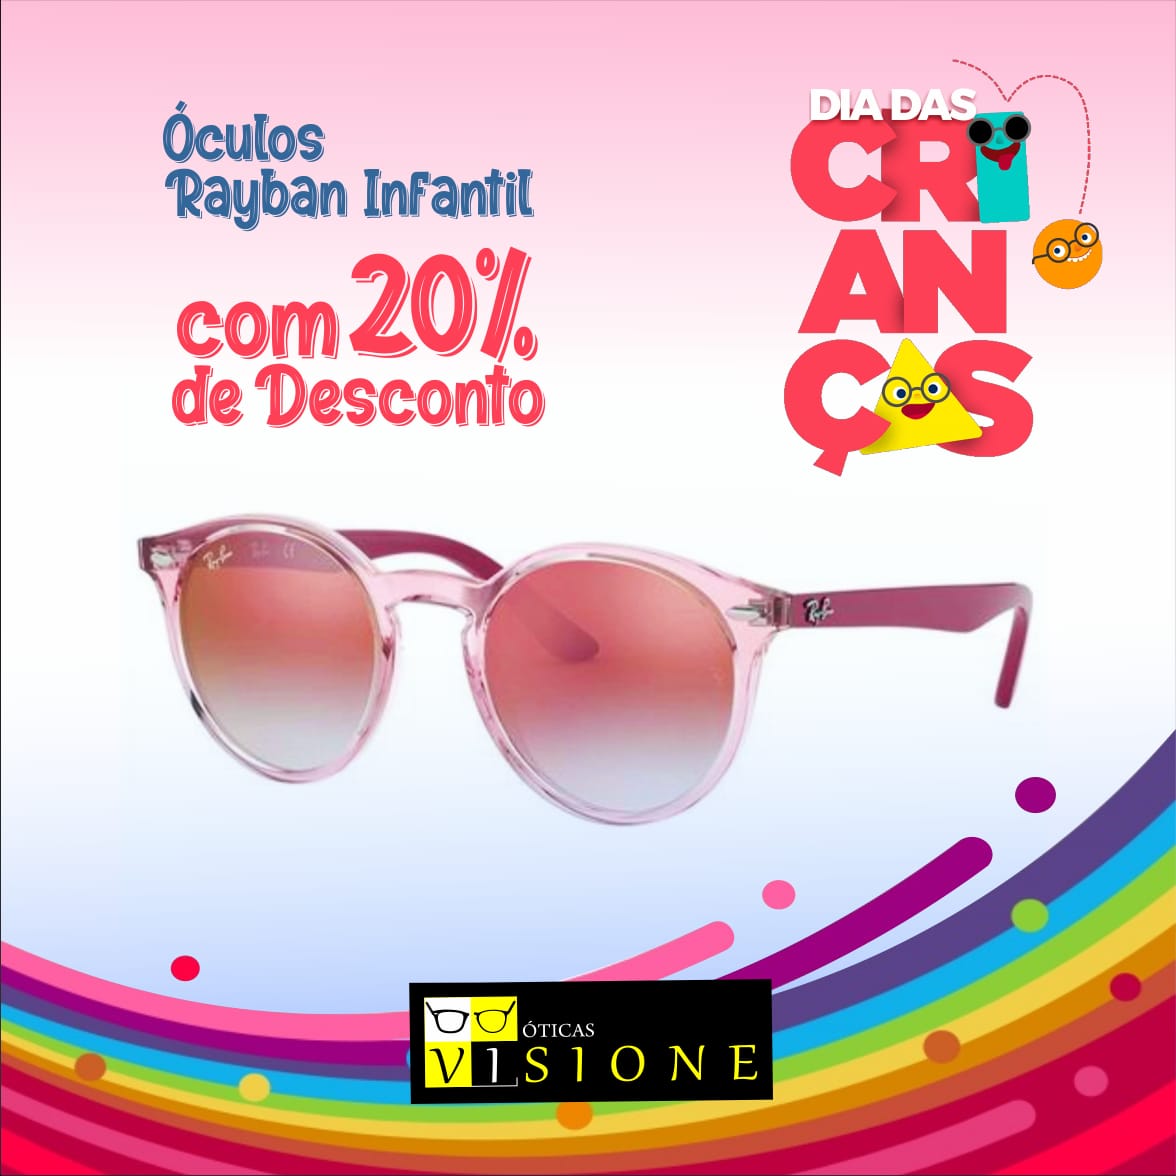 Promoção: Promoção Dia das Crianças - Óculos Rayban Infantil com 20% de Desconto